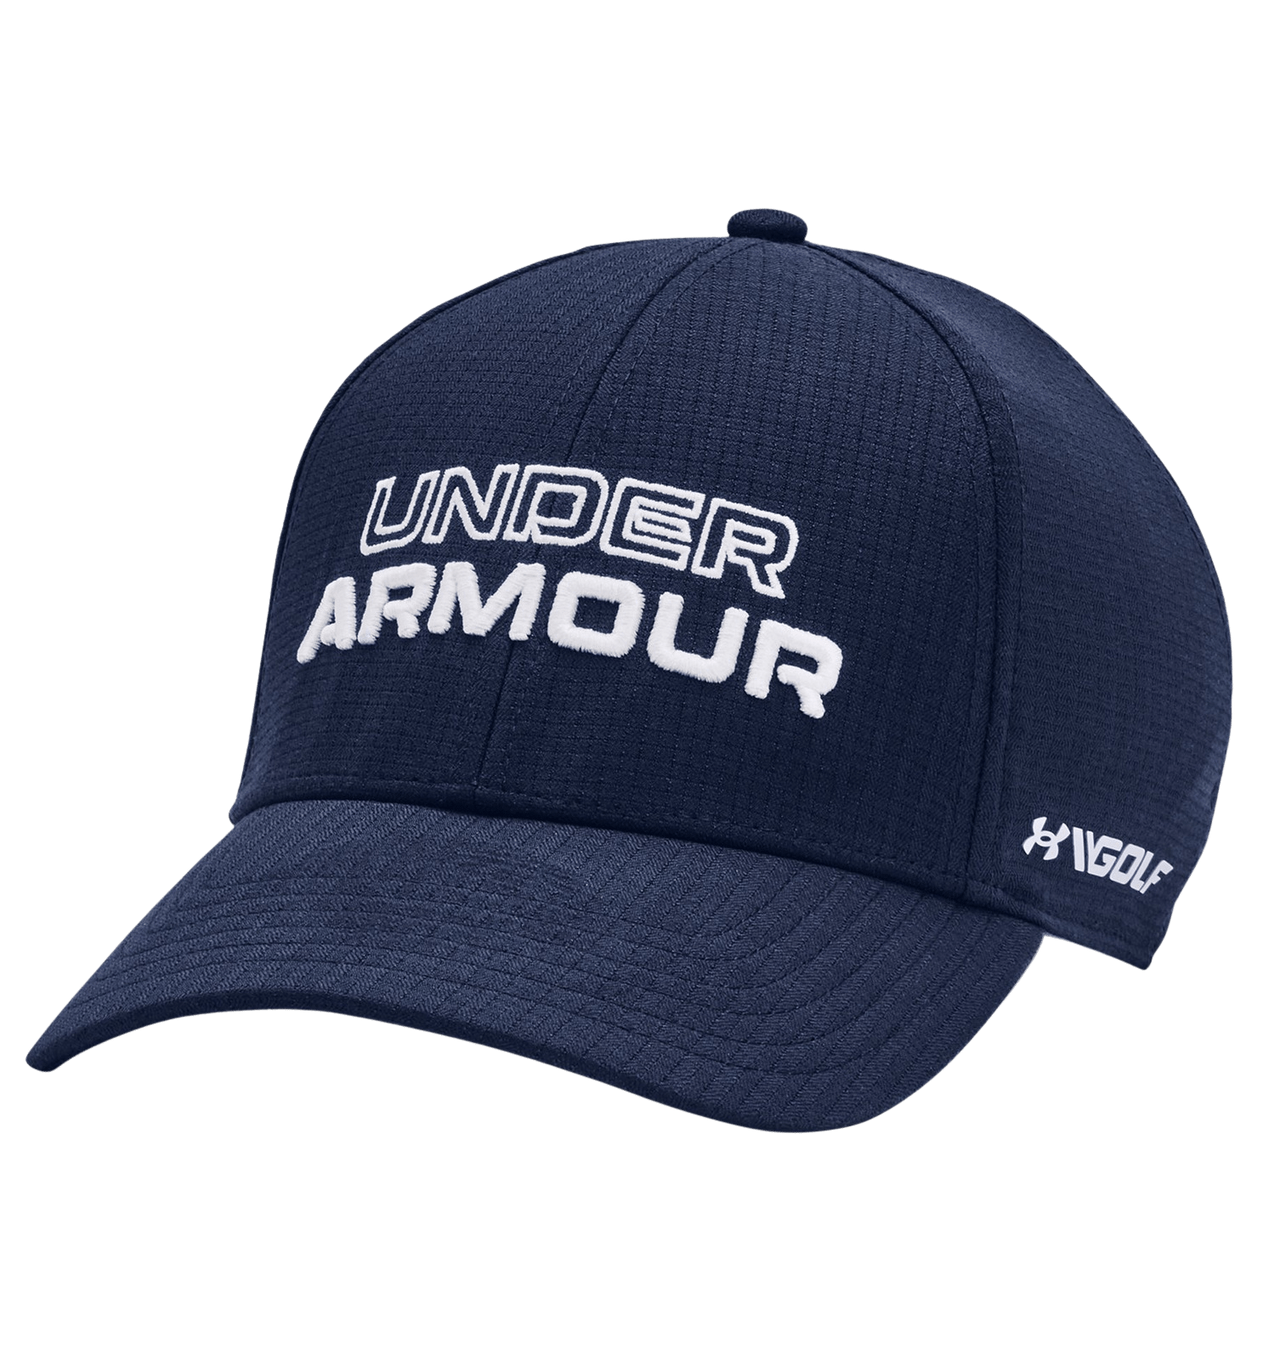 Under Armour Jordan Spieth Tour Stretch Fit Men's Hat